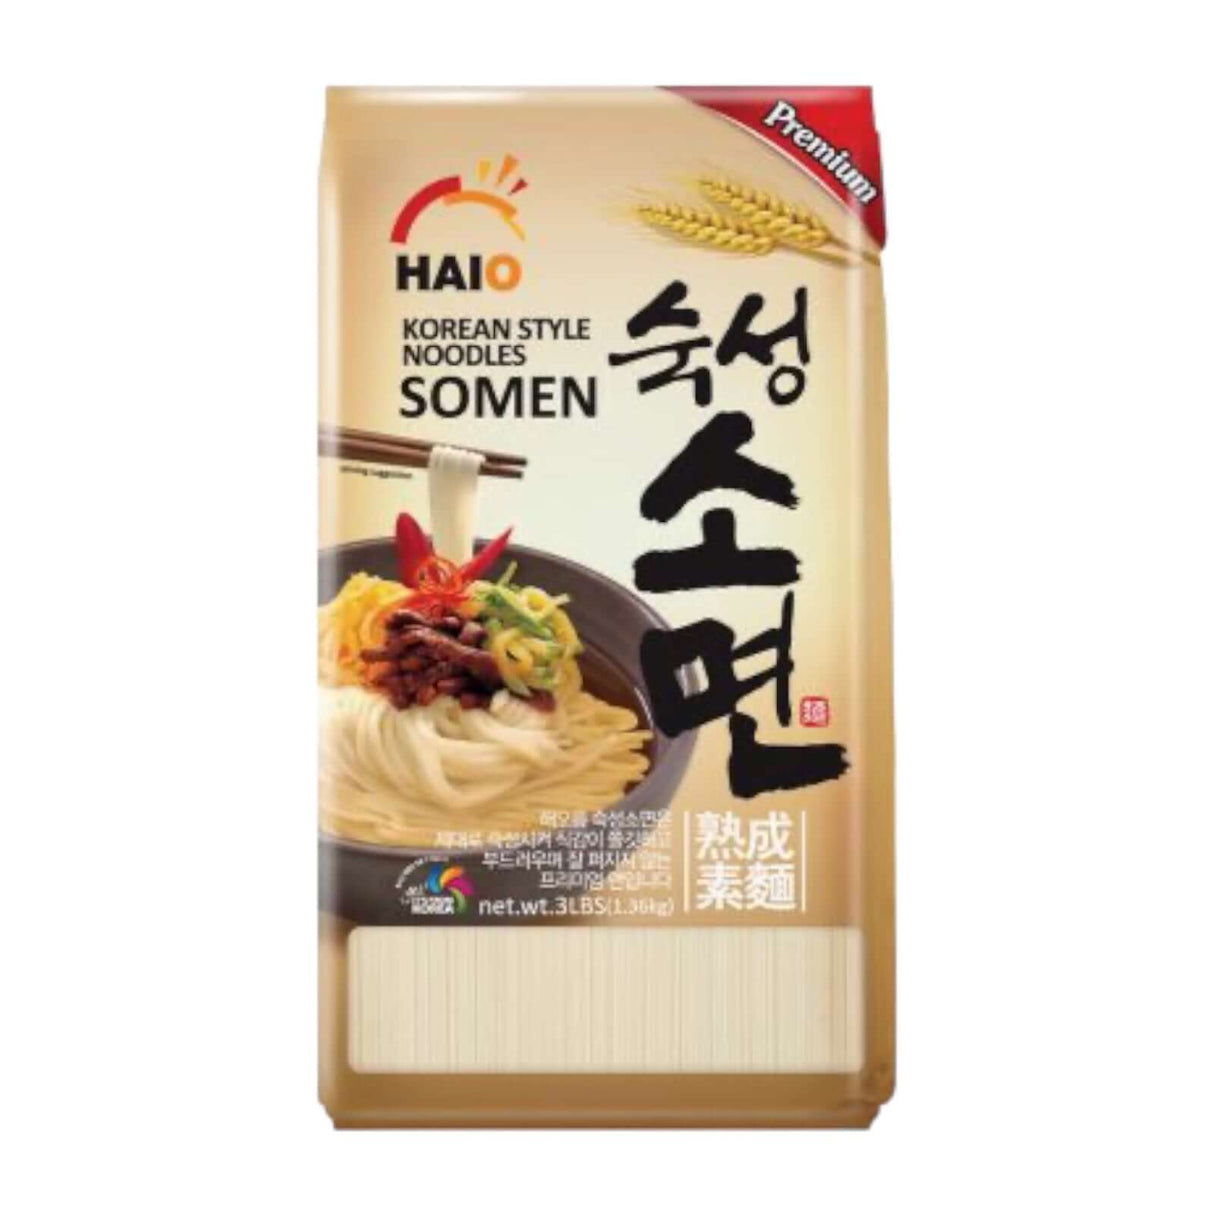 Haio Premium Korean Style Noodles Somen